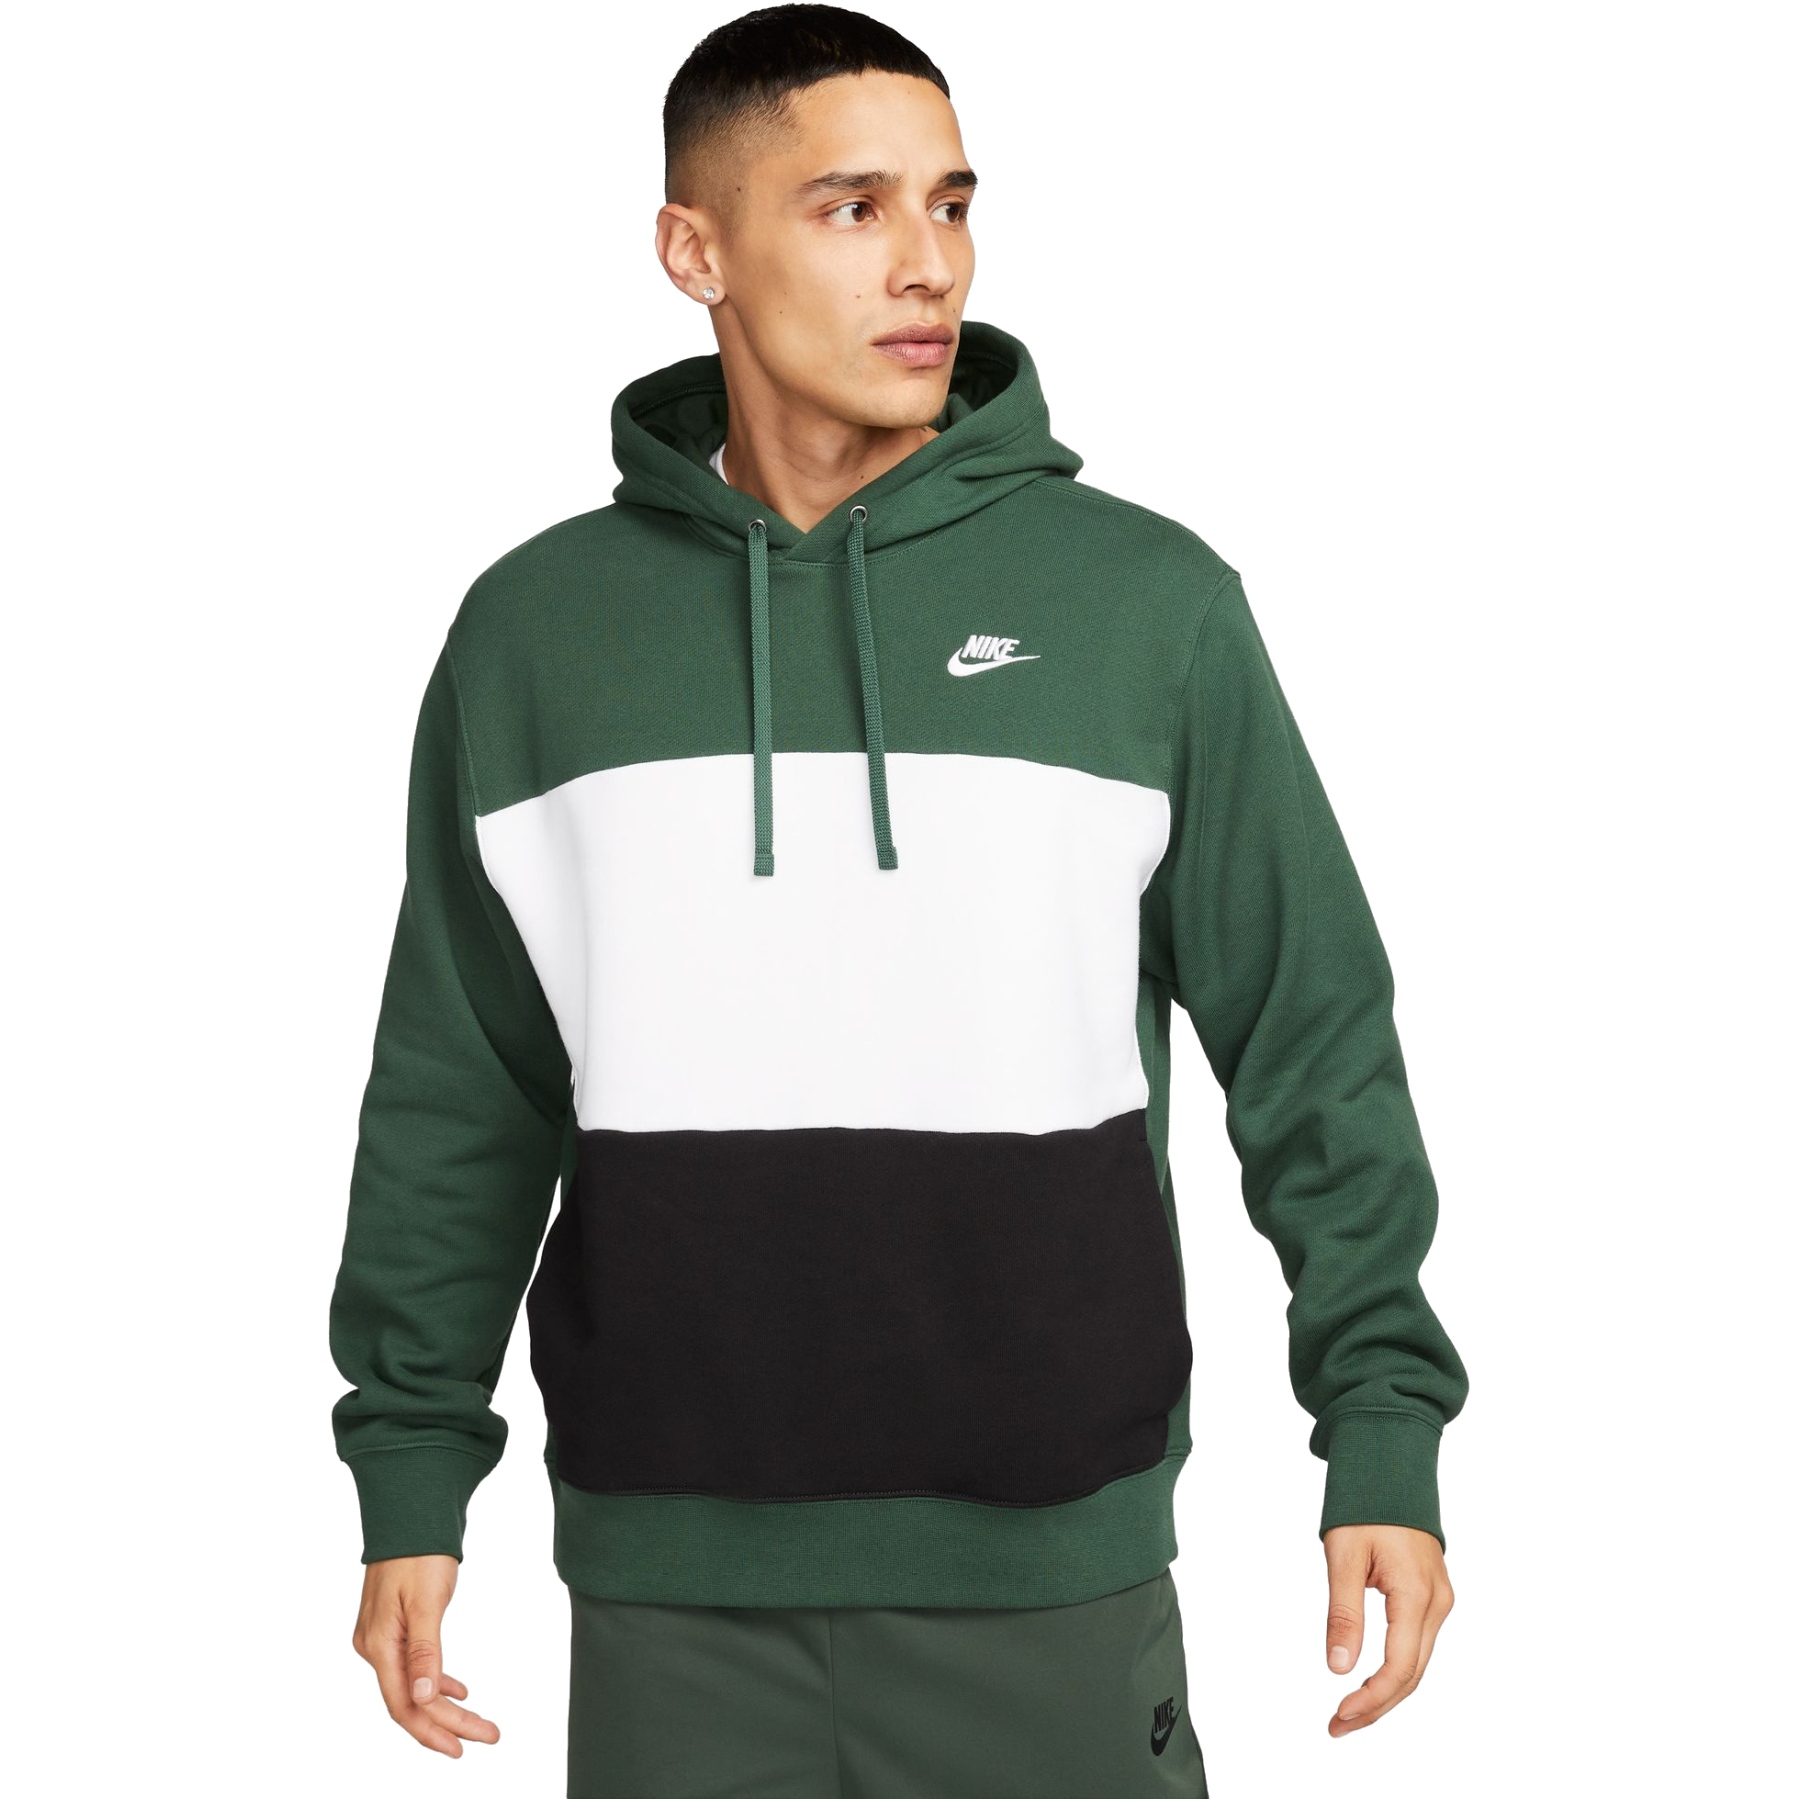 Produktbild von Nike Club Fleece Color-Blocked Kapuzenpullover Herren - fir/white/black/white FB7415-323